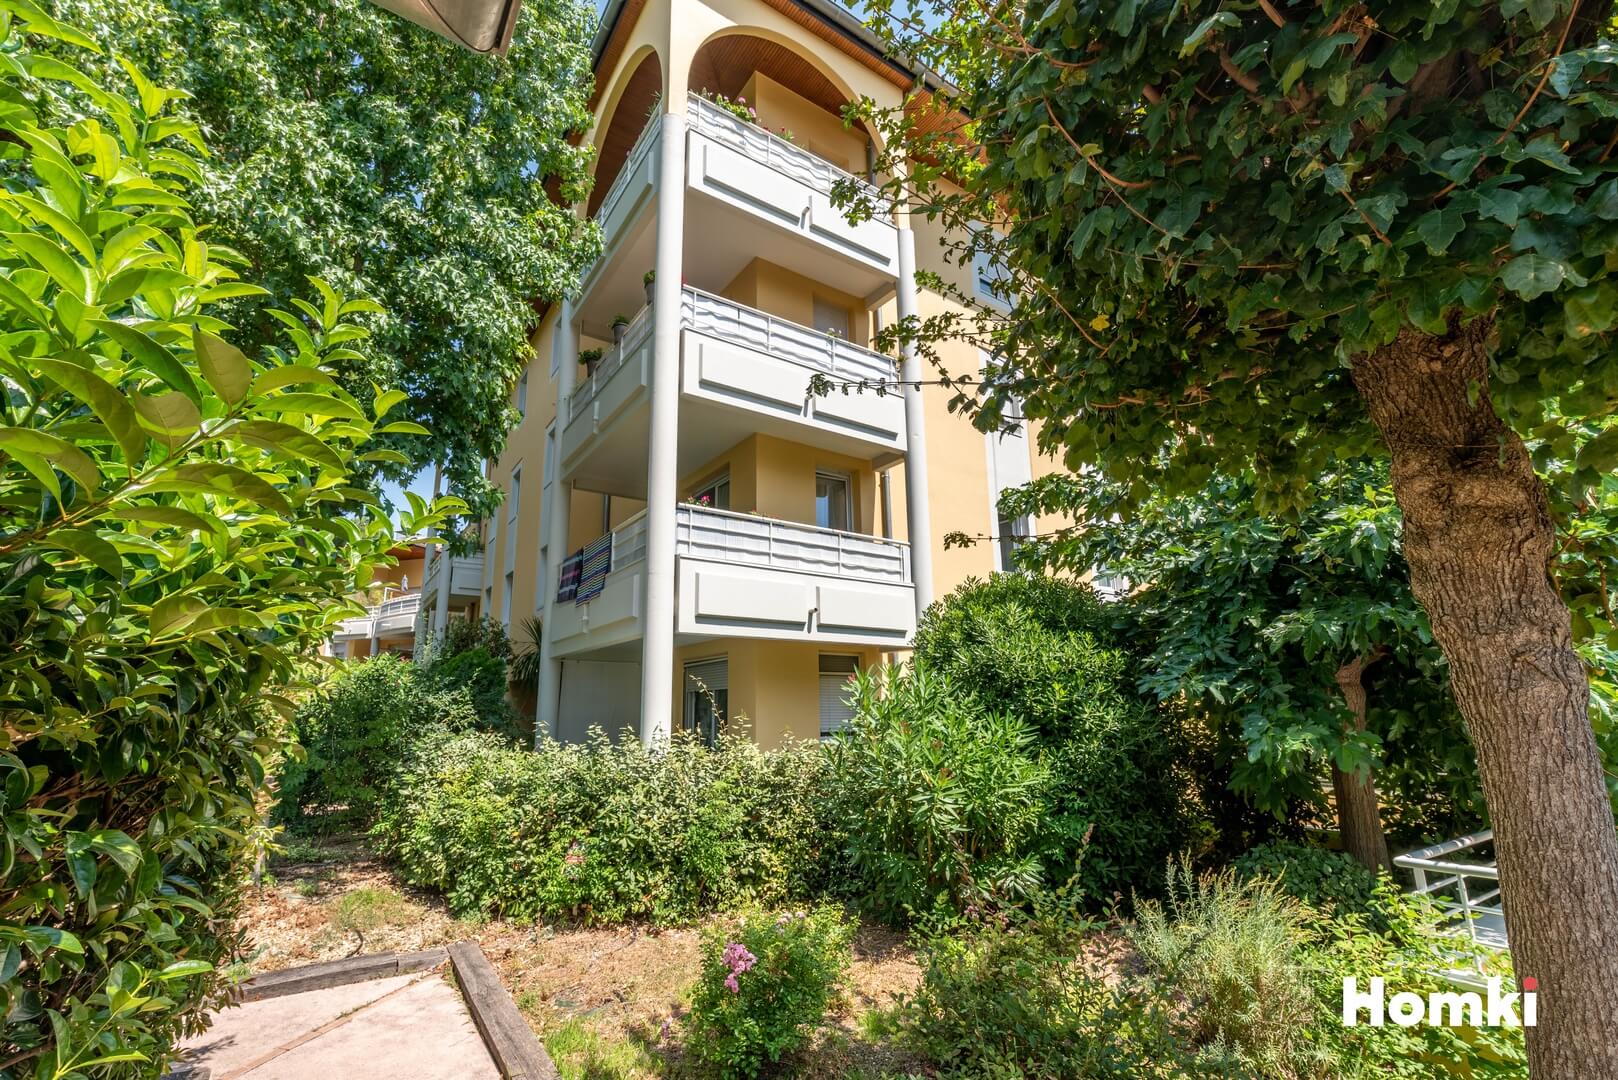 Homki - Vente Appartement  de 84.0 m² à Lattes 34970